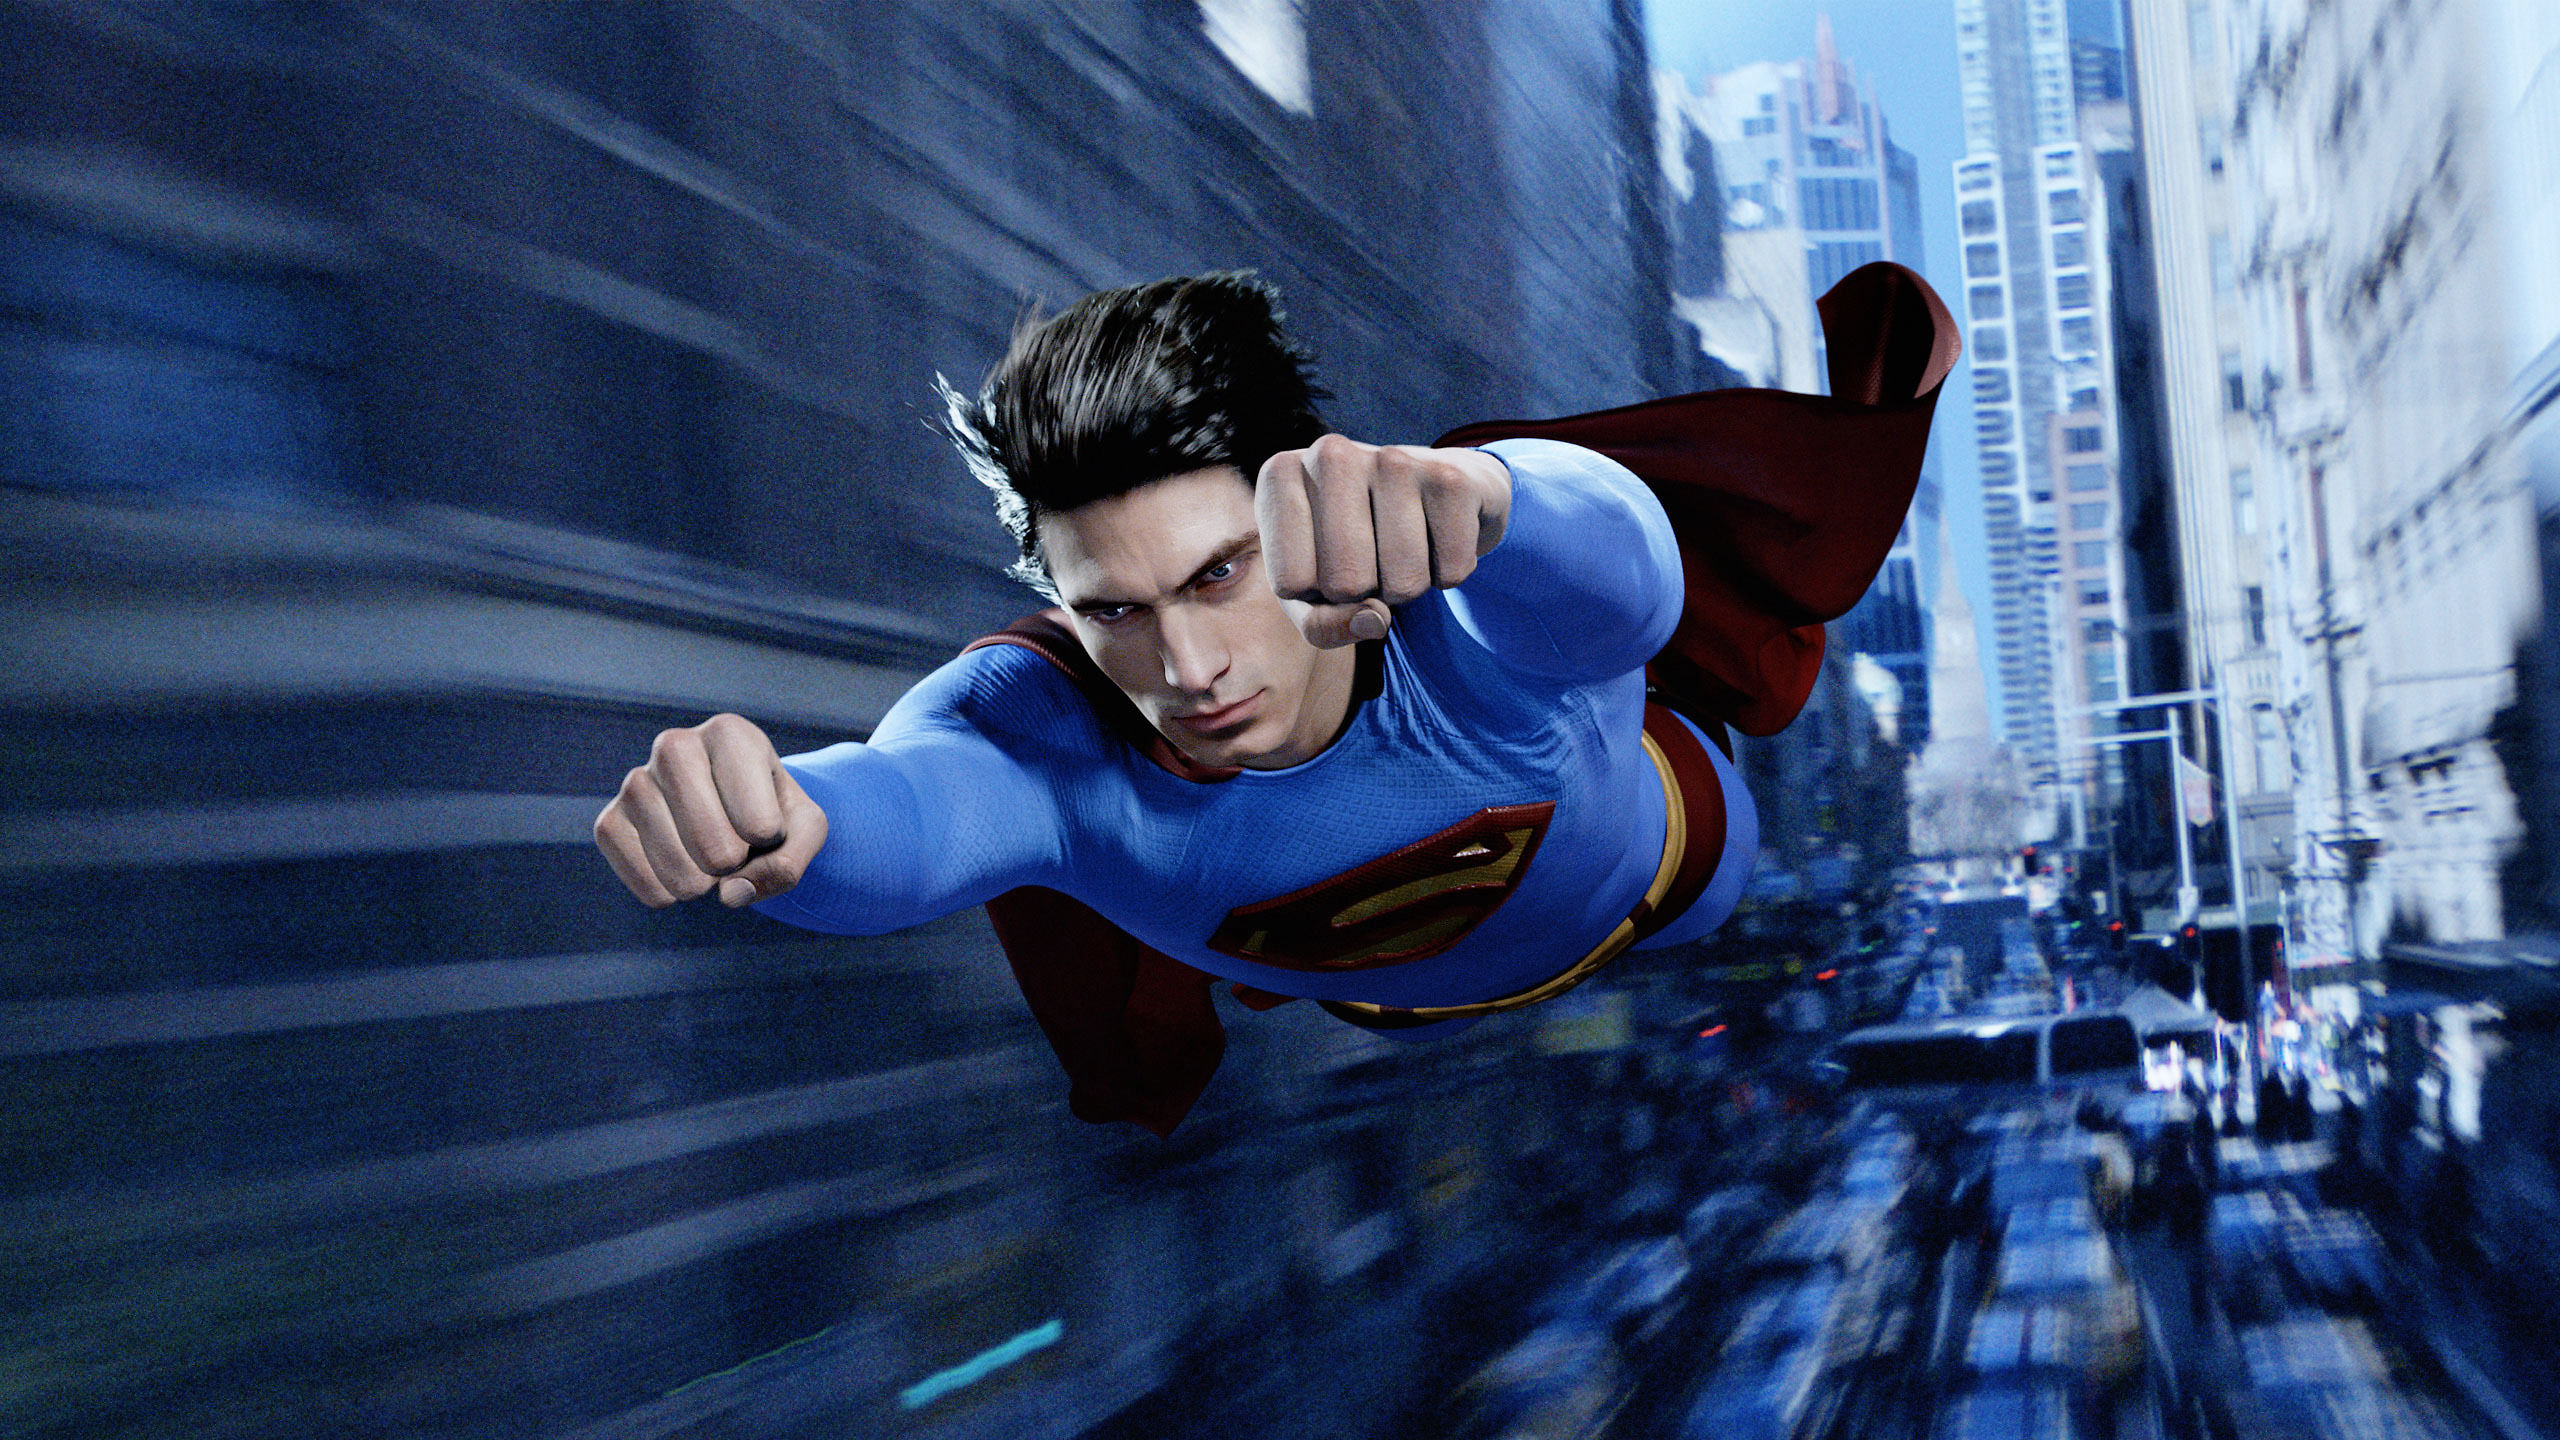 superman hd fond d'écran,superman,personnage fictif,super héros,ligue de justice,danse de rue